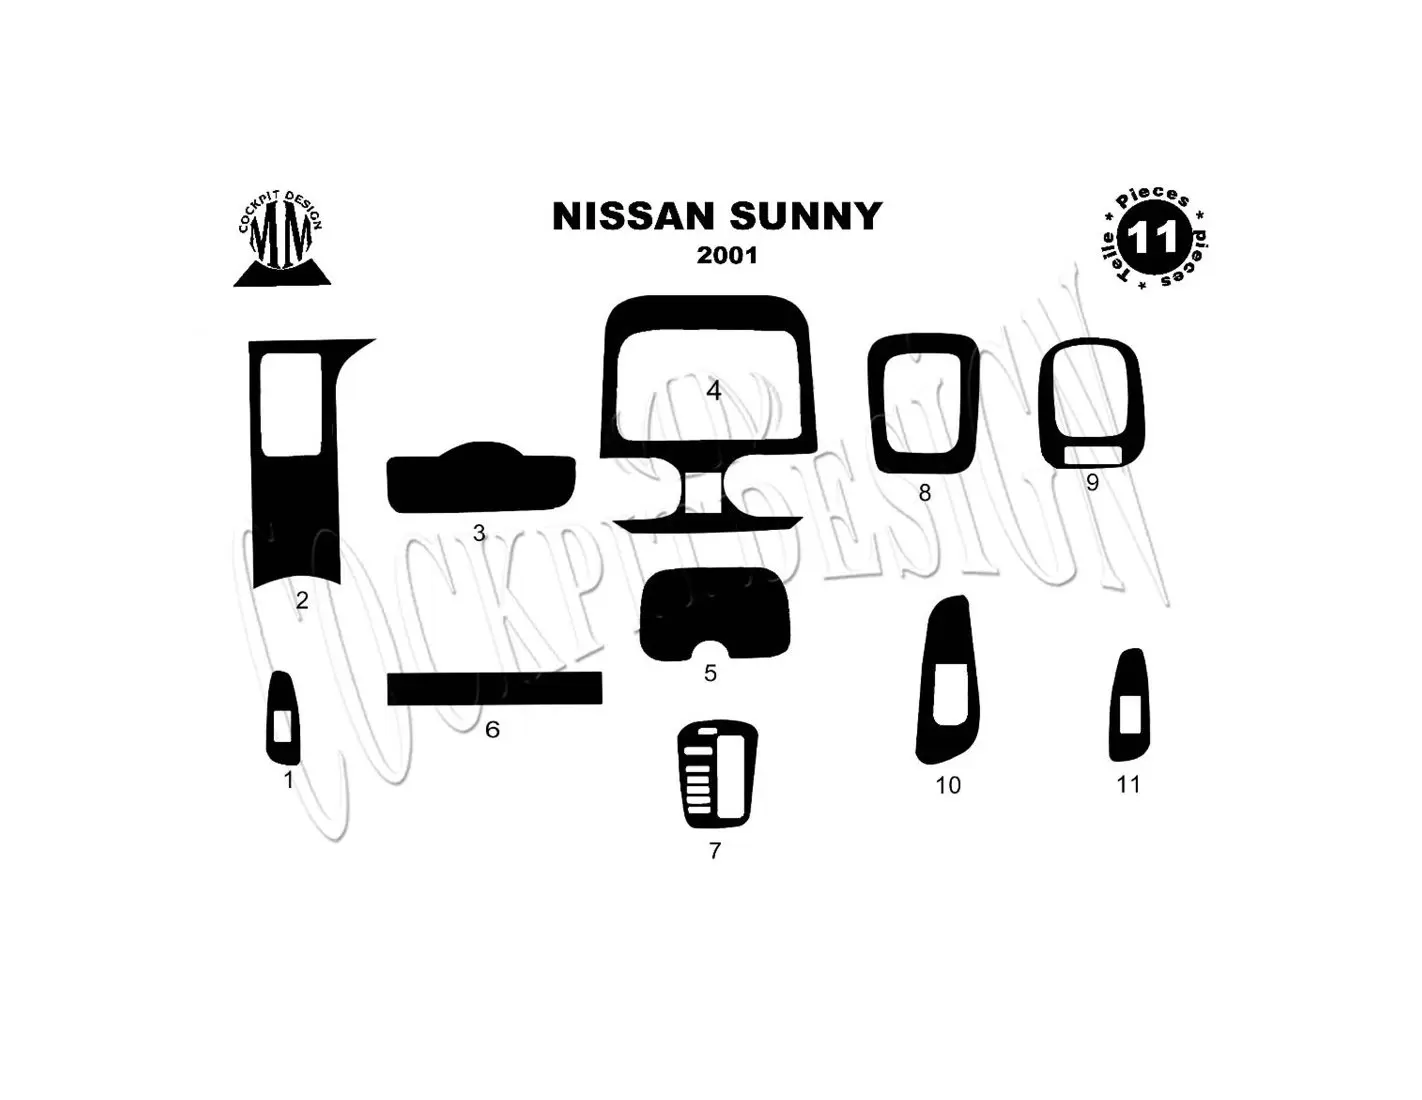 Nissan Sunny 2001 Mittelkonsole Armaturendekor Cockpit Dekor 11-Teilige - 1- Cockpit Dekor Innenraum